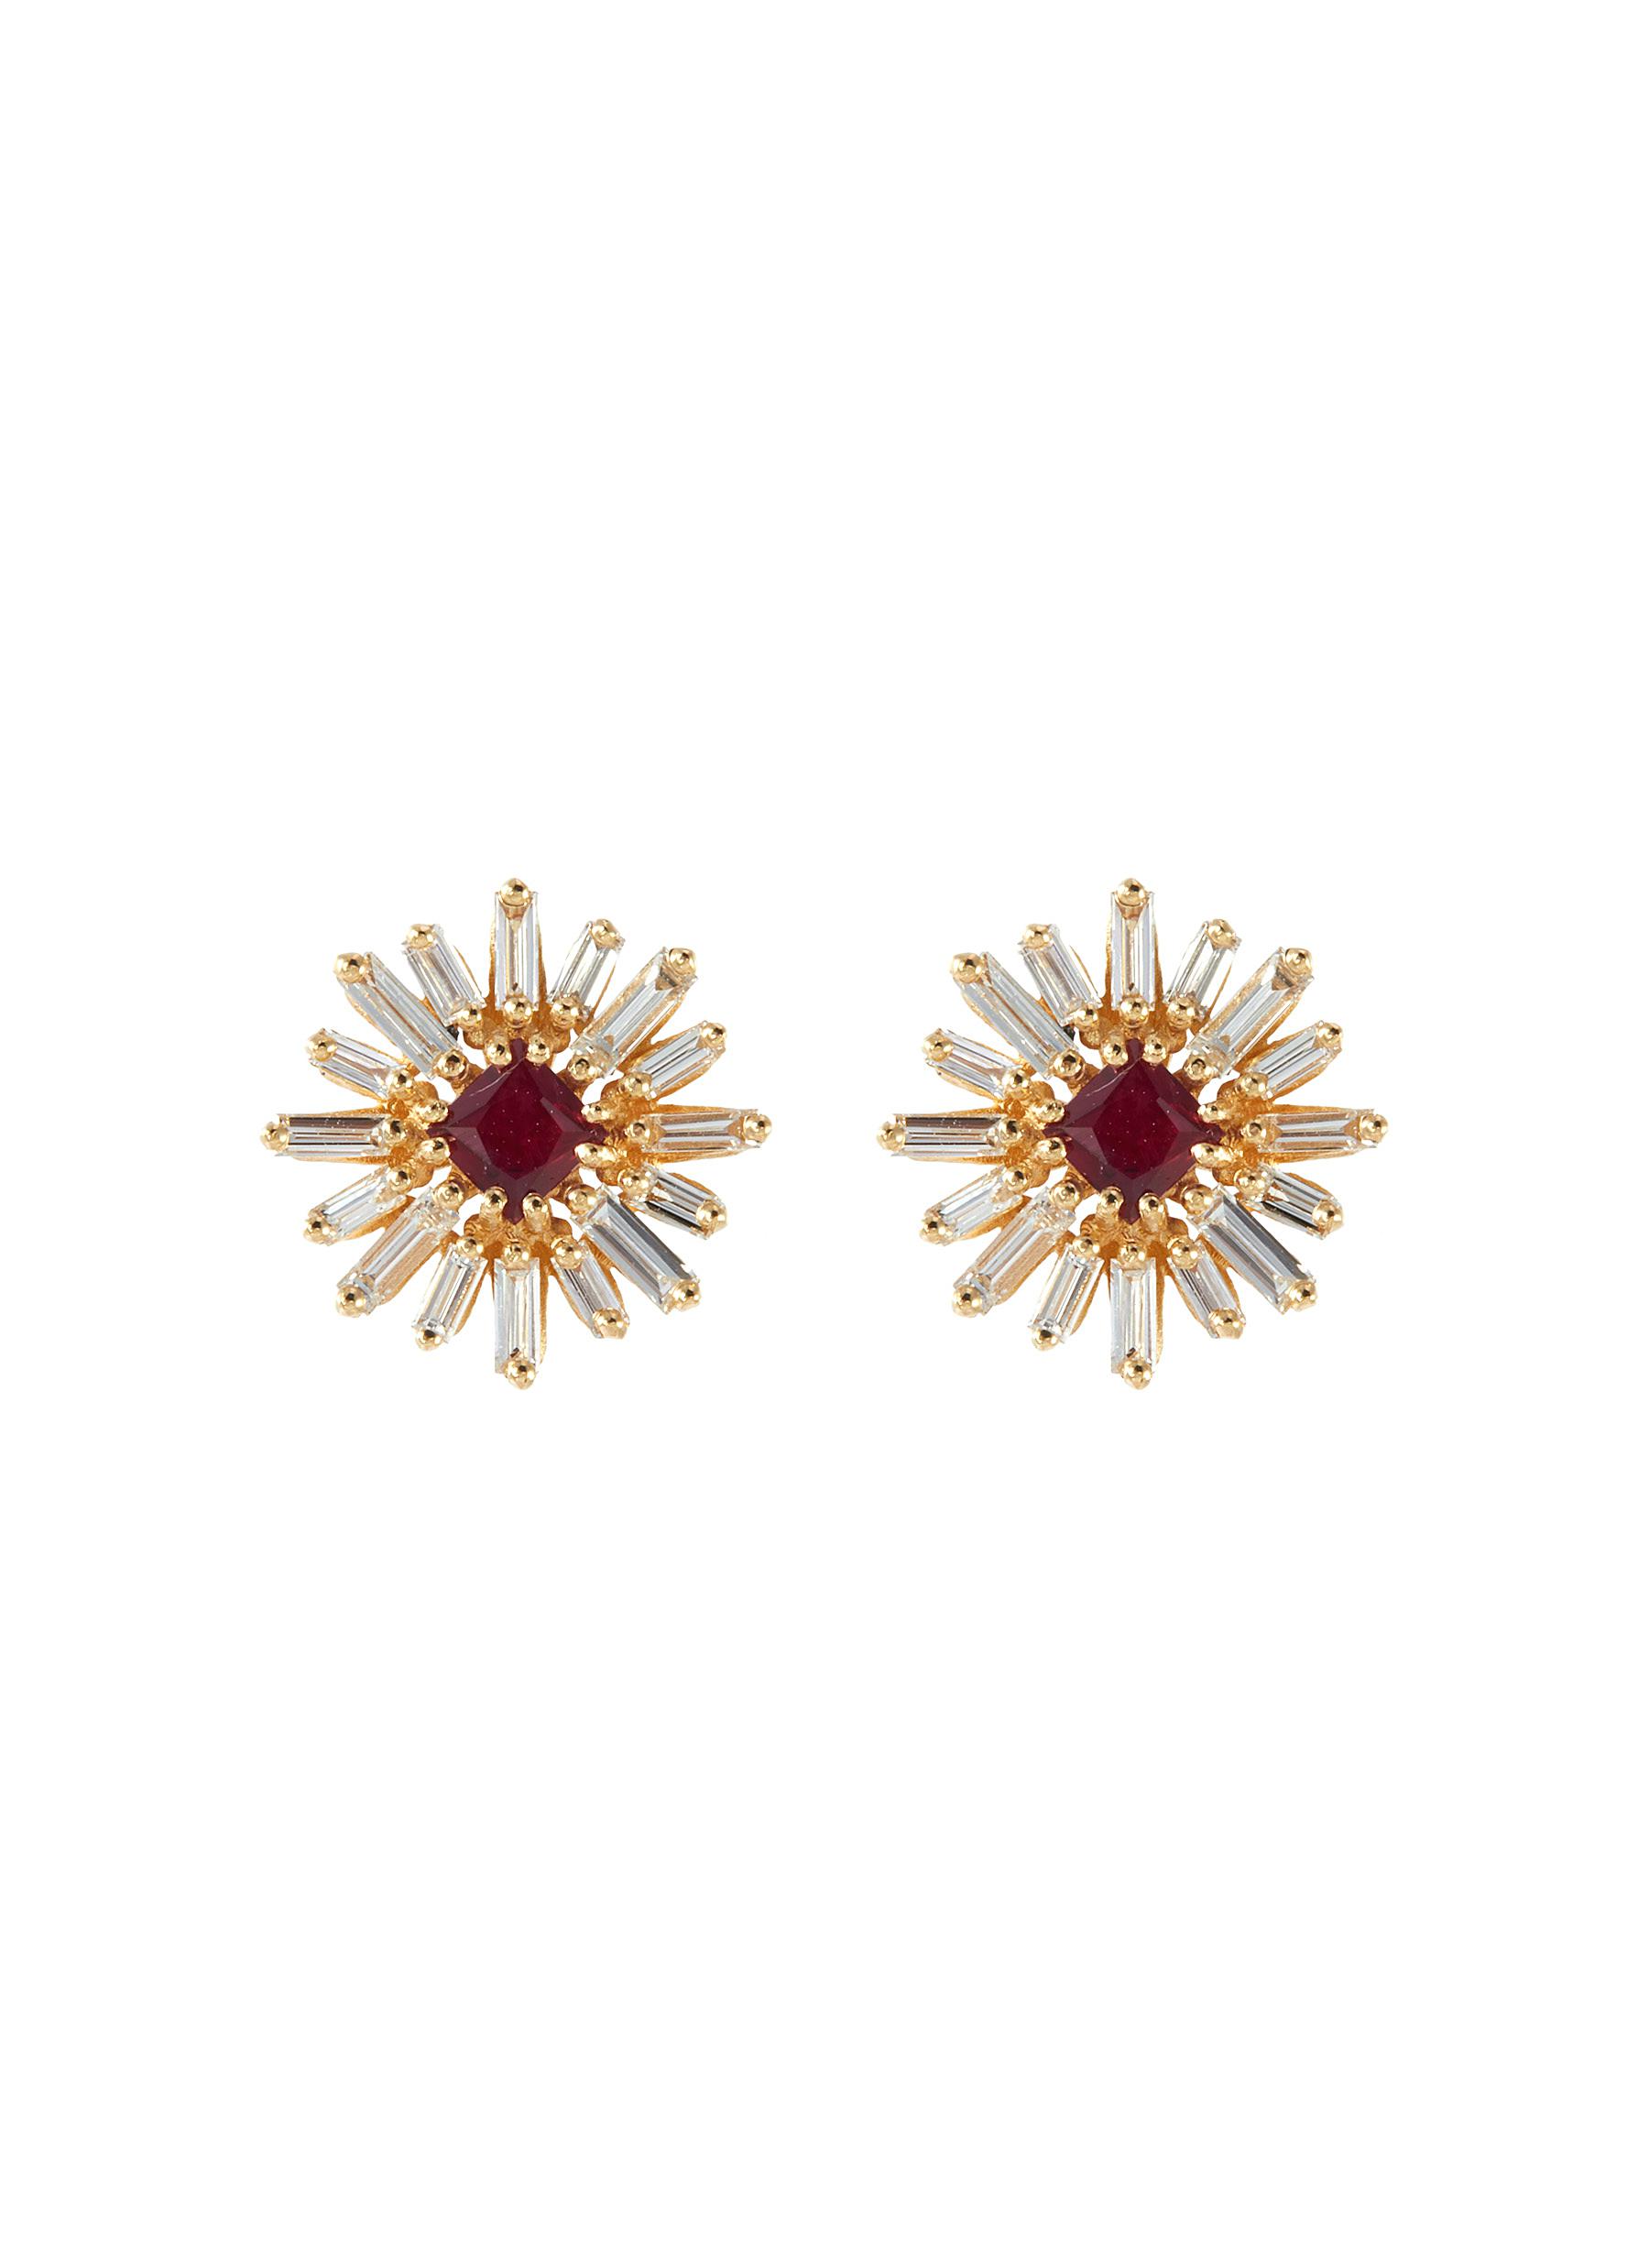 Suzanne Kalan Diamond Ruby 18k Gold Earrings